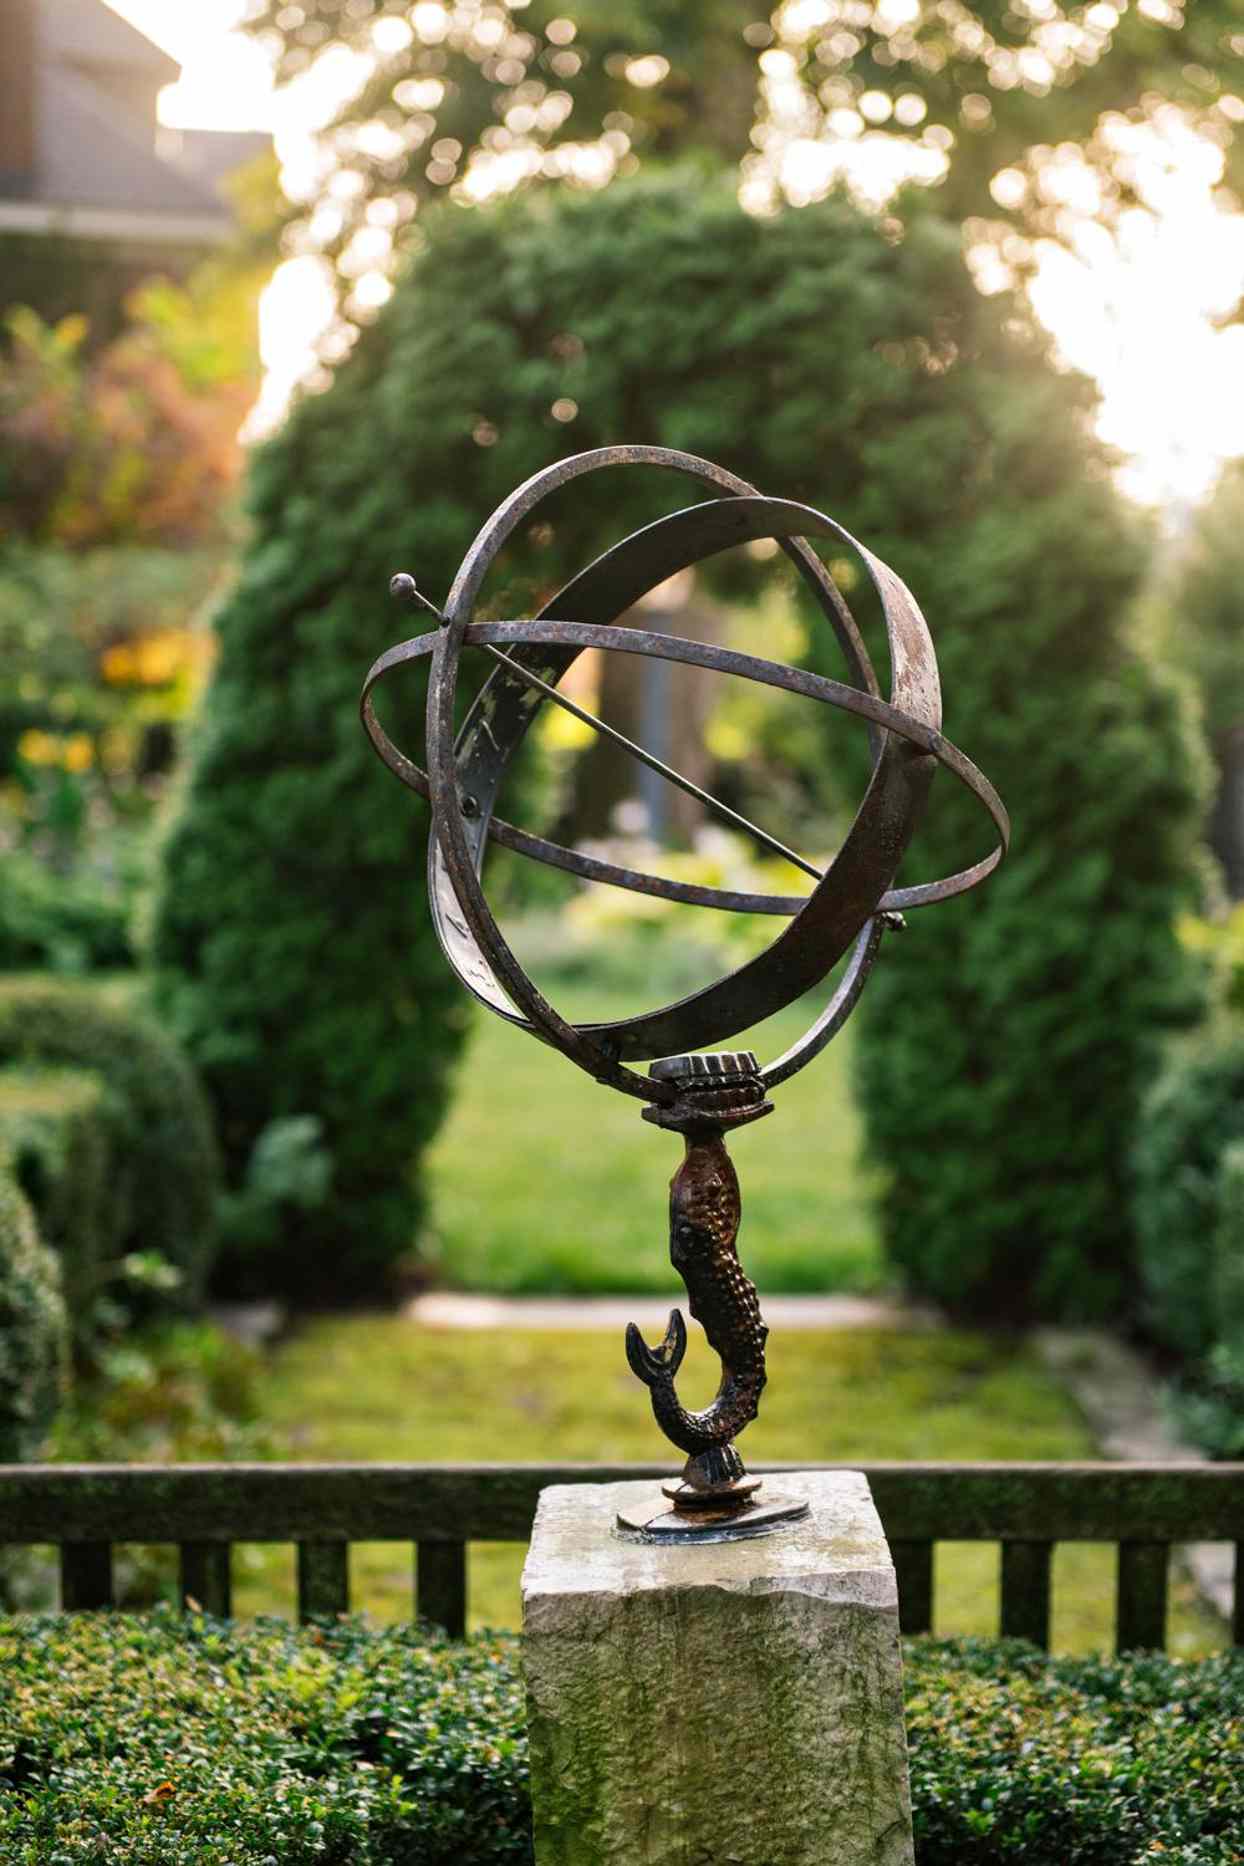 metal garden sculpture